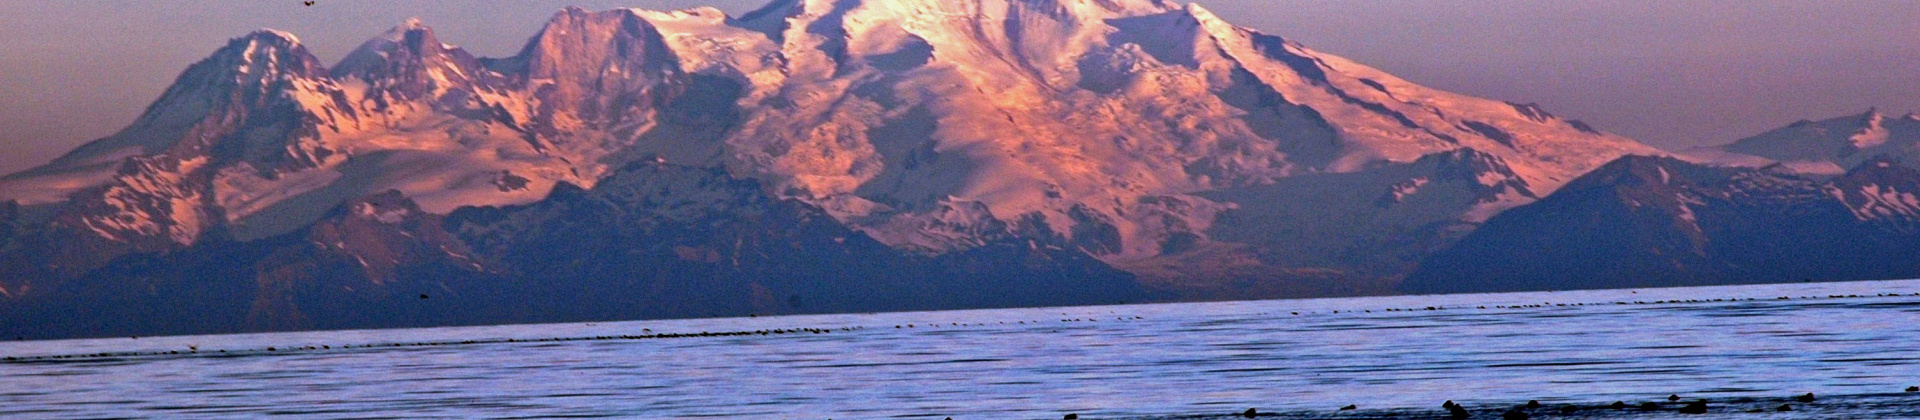 Alaskan mountain 2005_david ramey photo